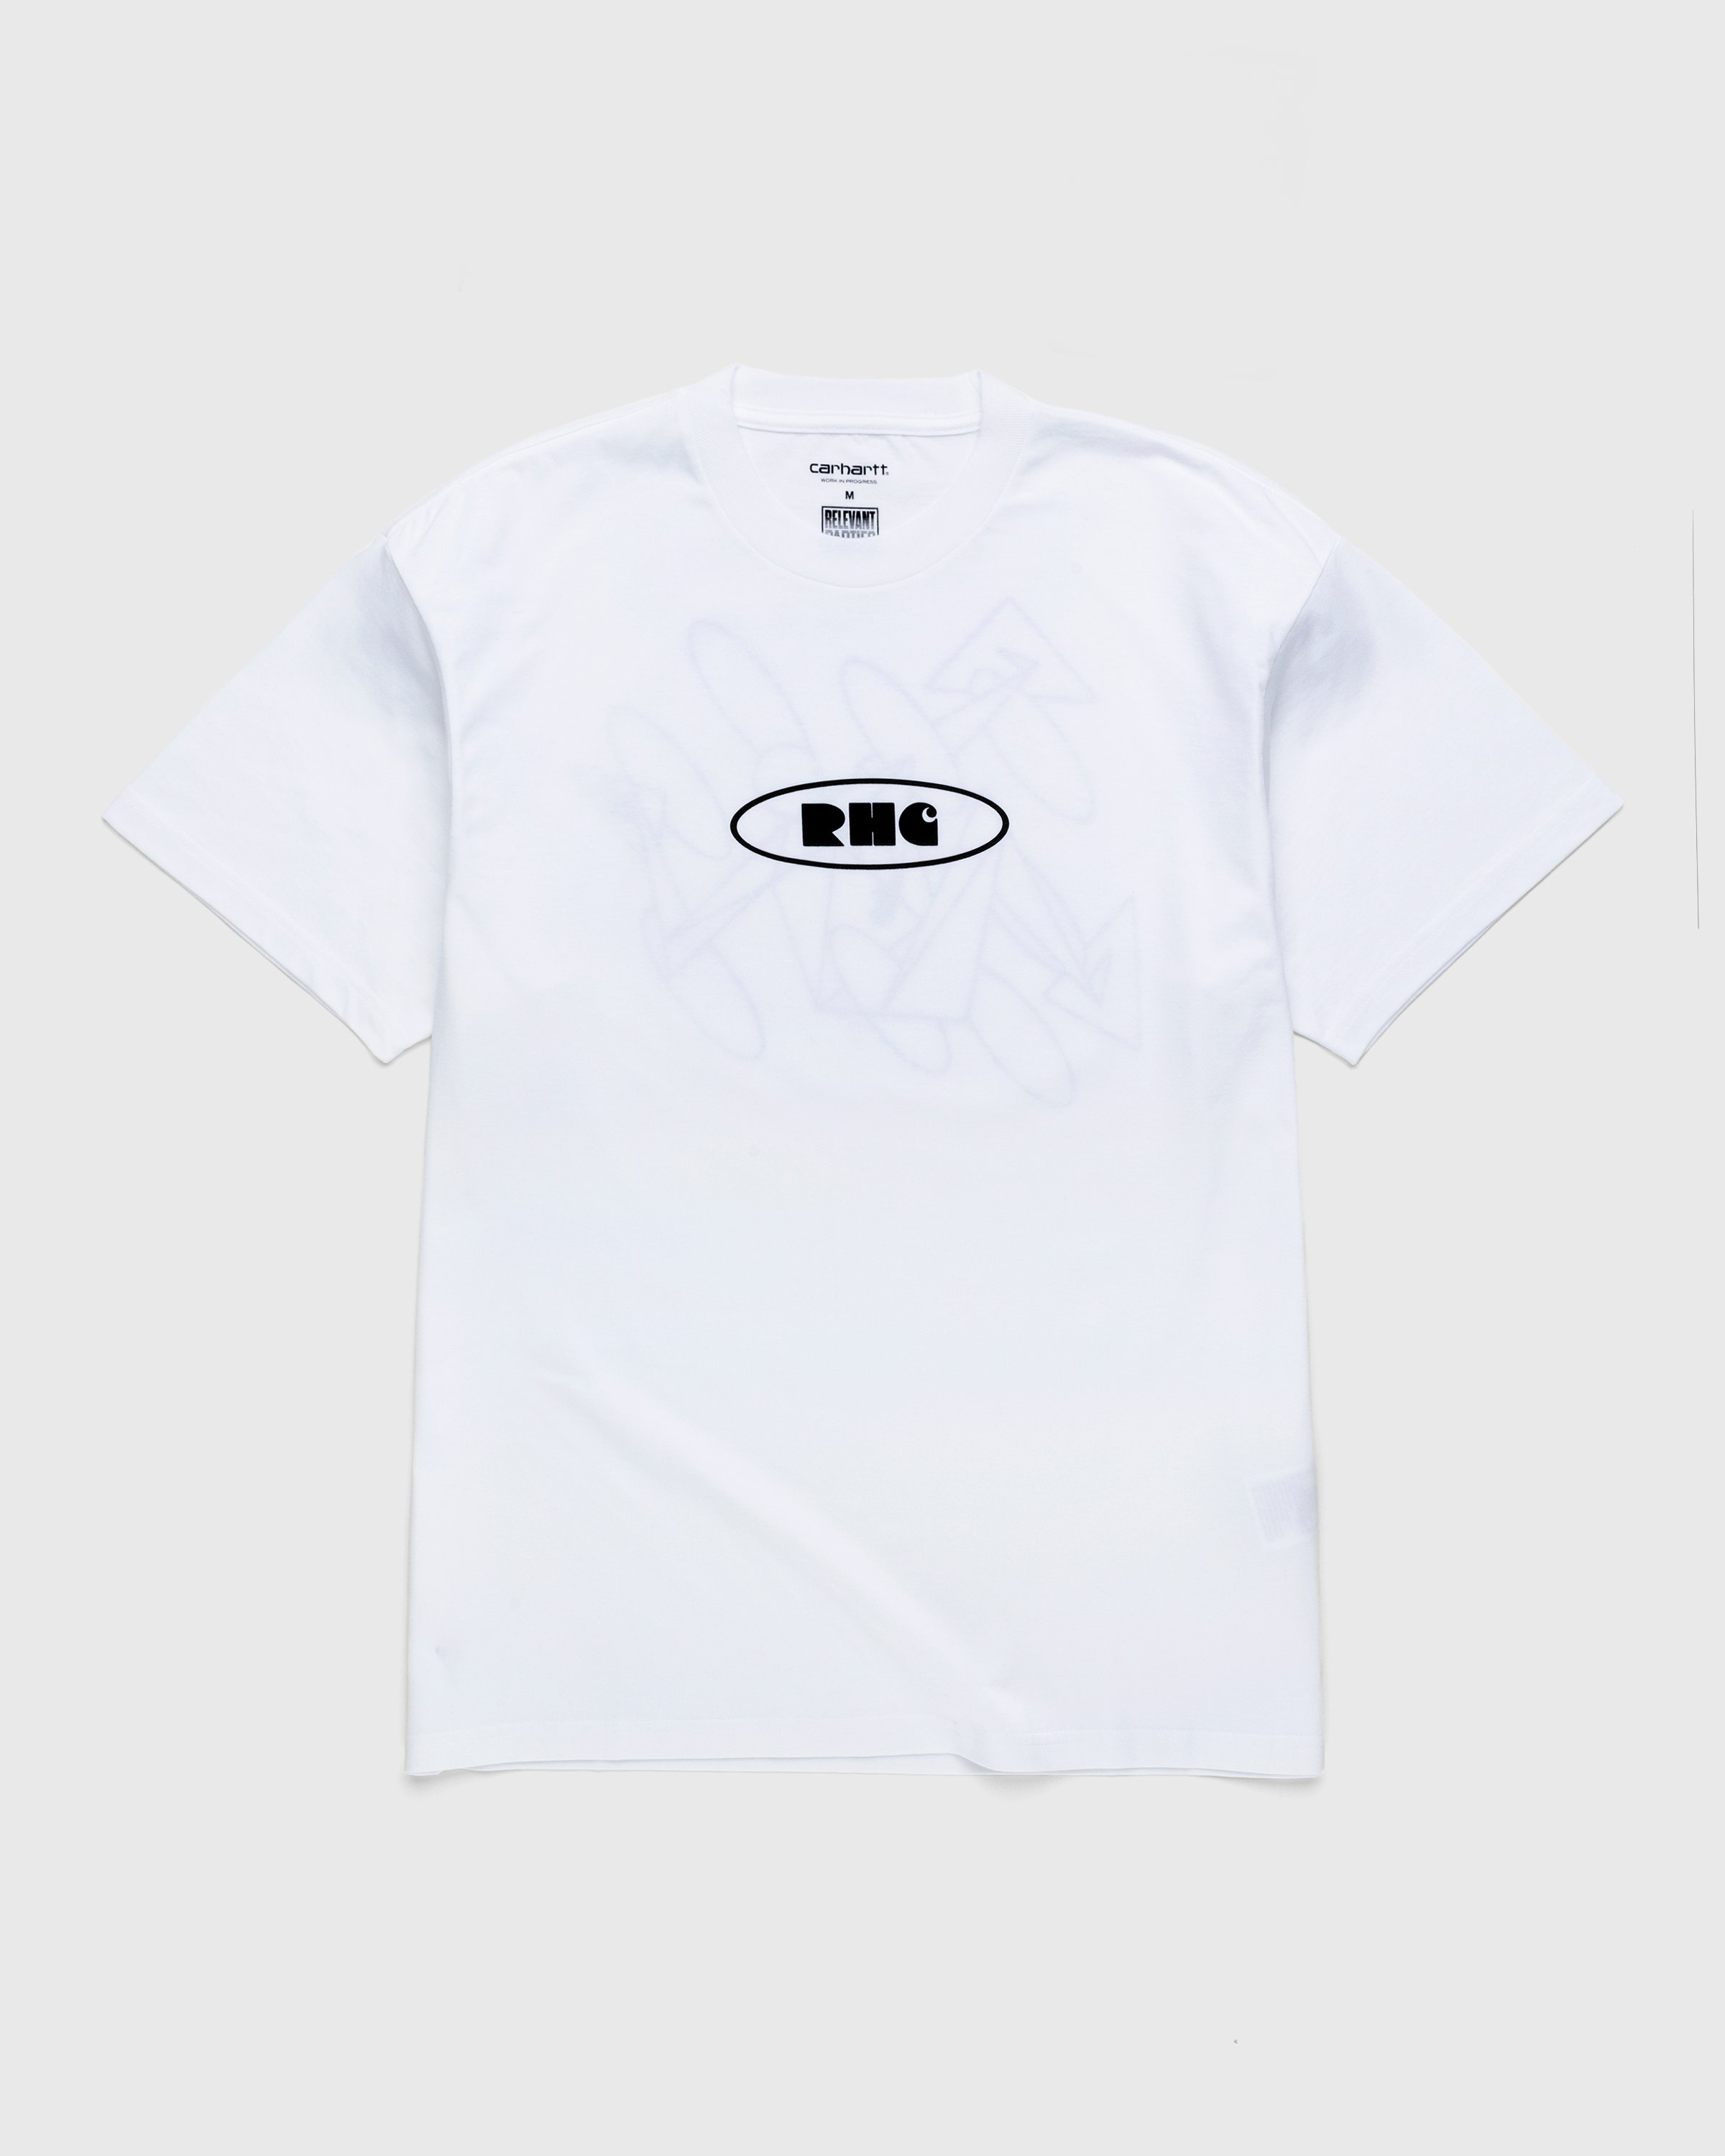 Carhartt WIP - Rush Hour T-Shirt White/Black - Clothing - White - Image 1